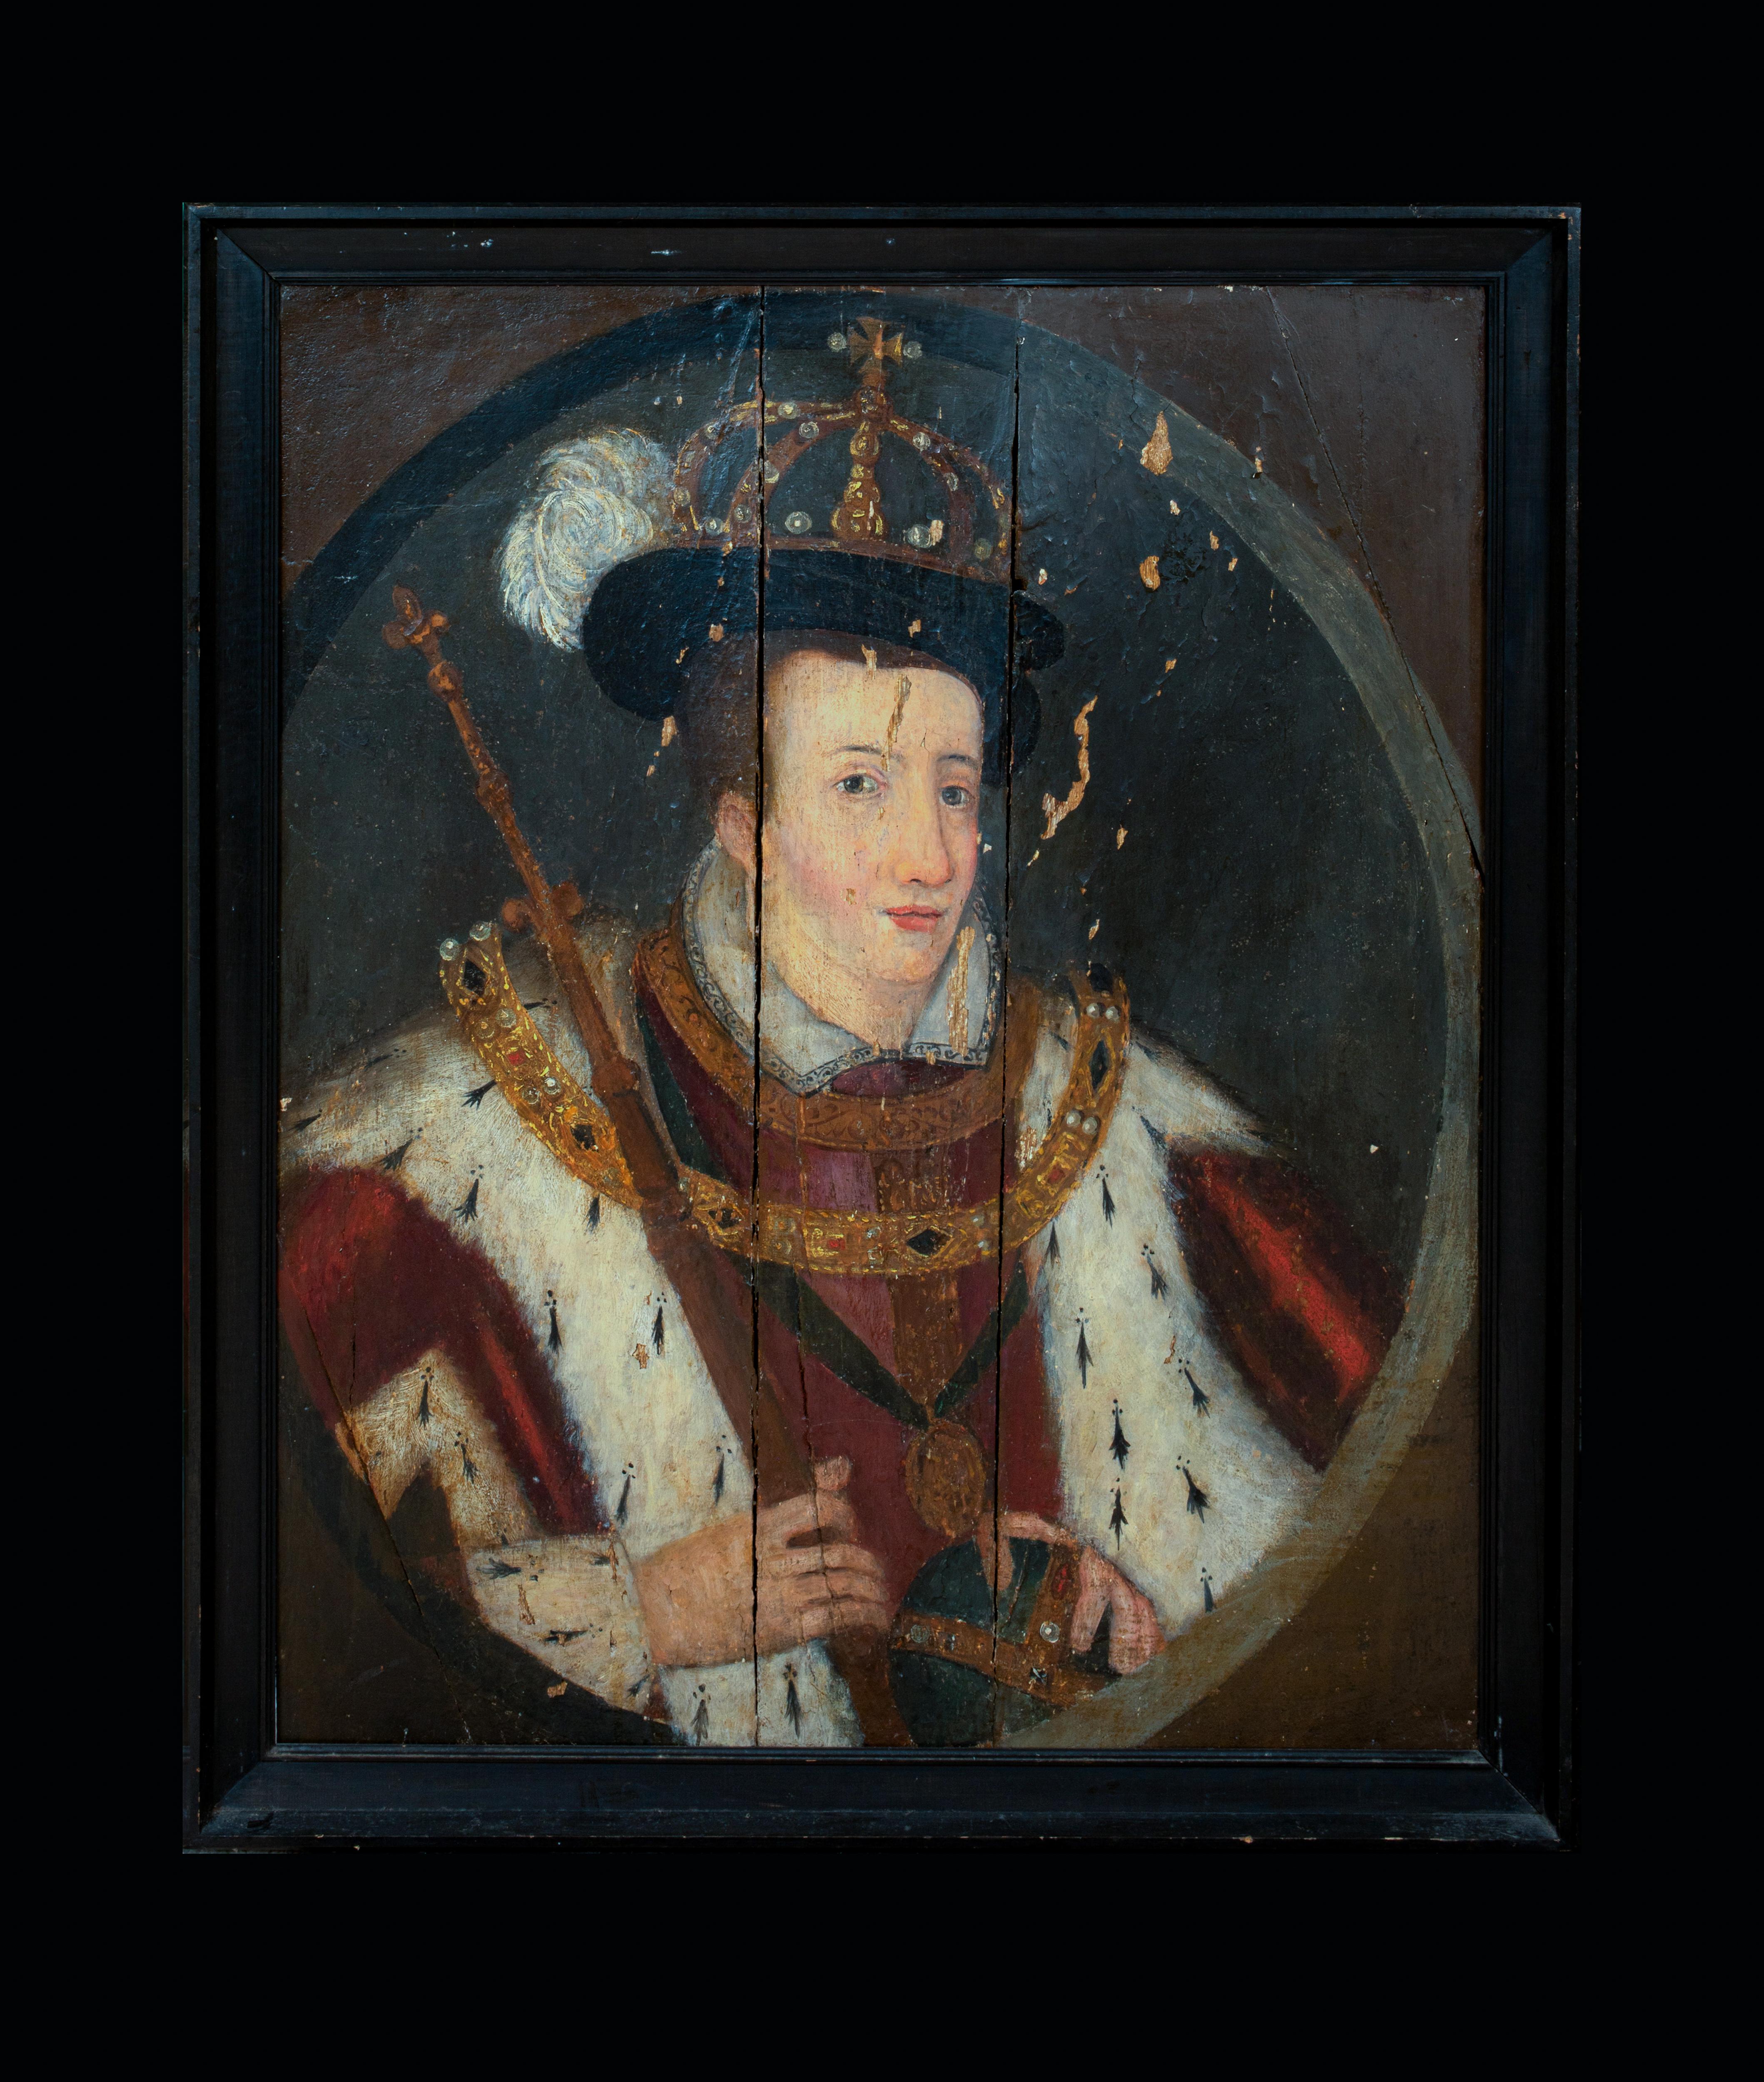 Coronation-Porträt von König Edward VI. (1537-1553) als König von England und Irland – Painting von Unknown